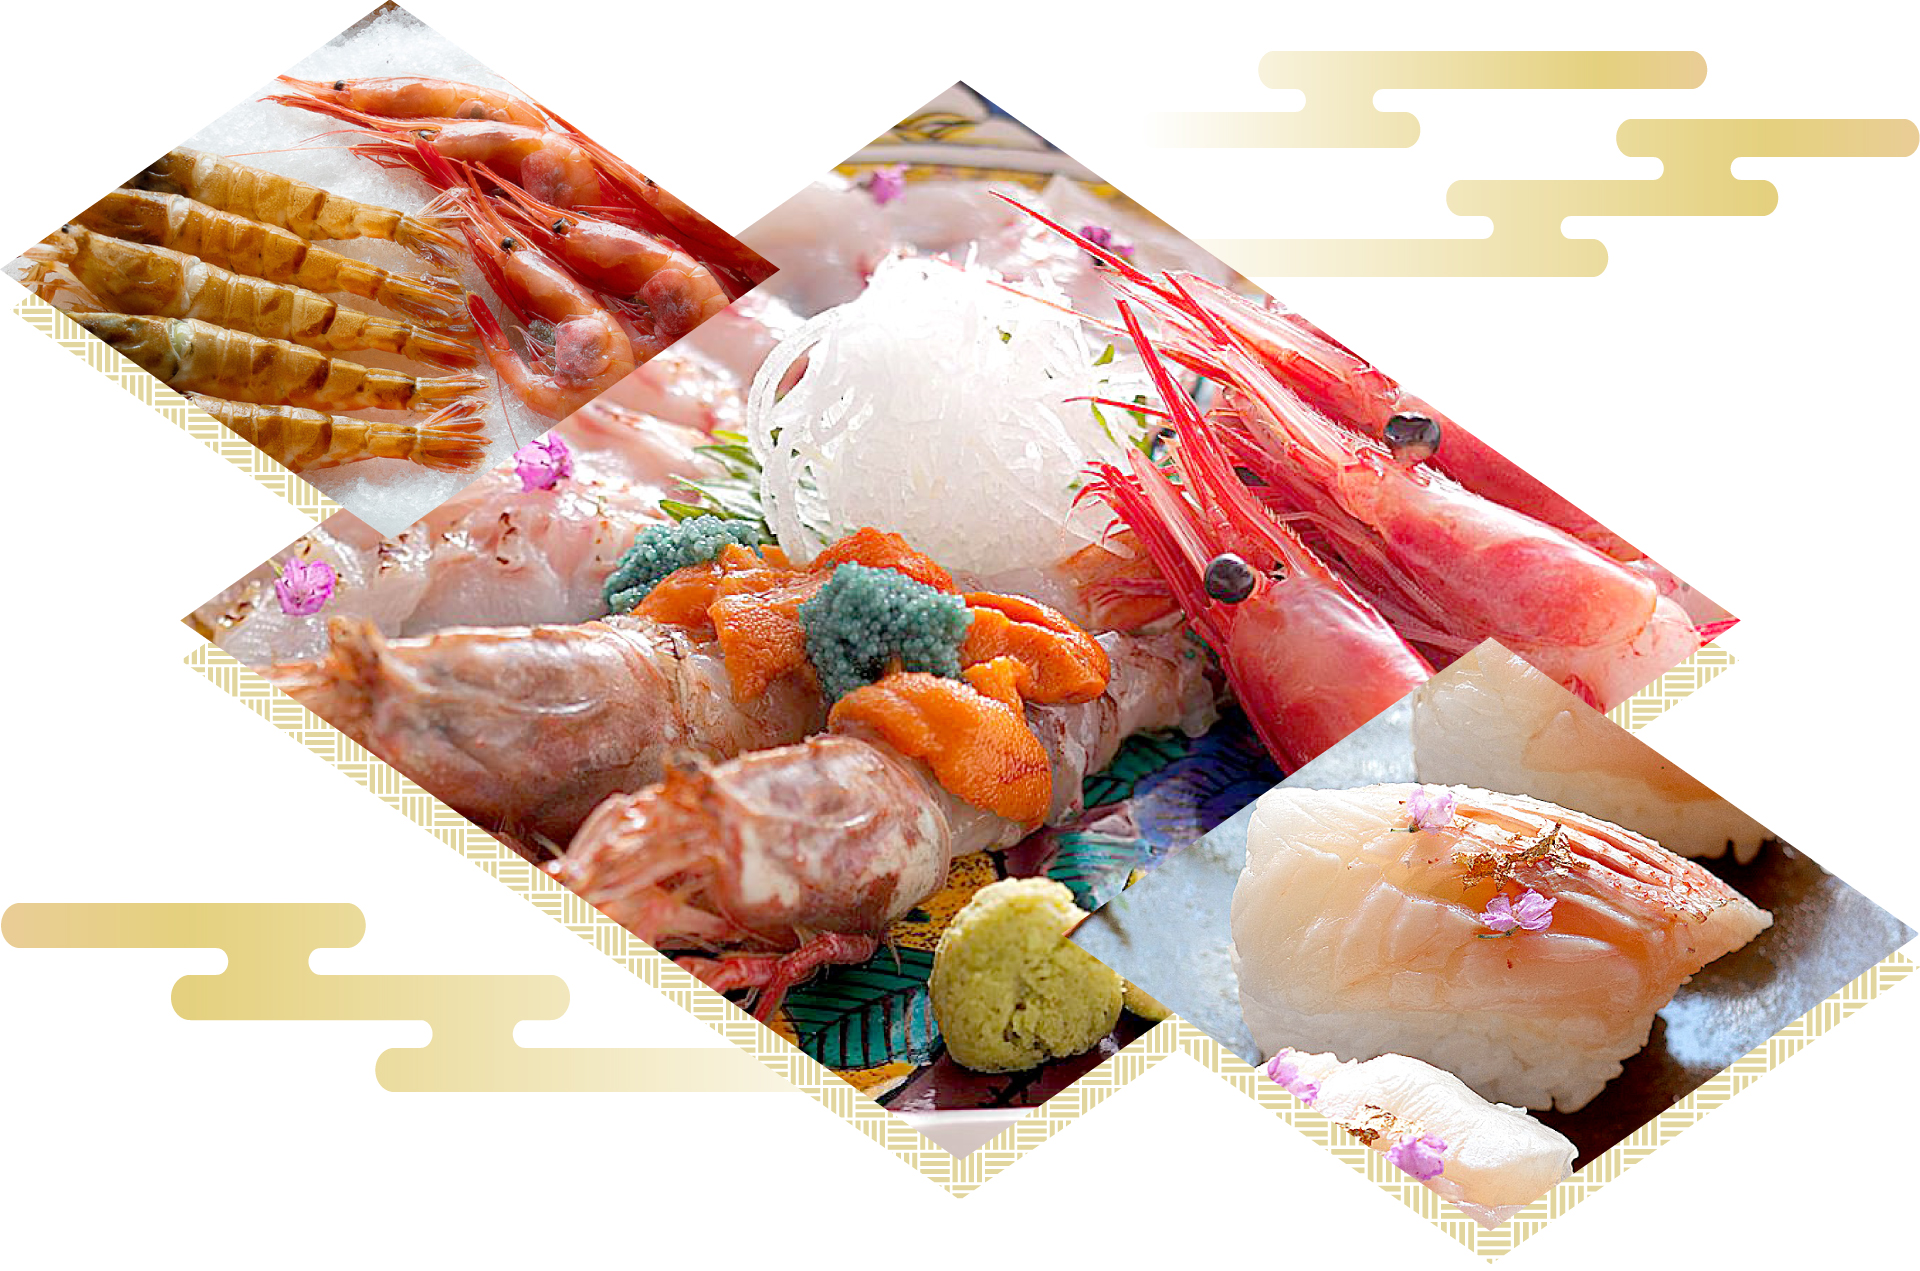 石川の旬の人気食材。ガスエビ・甘海老などの旬の魚介のお造り、人気の郷土料理「加賀治部煮」風の鍋仕立て